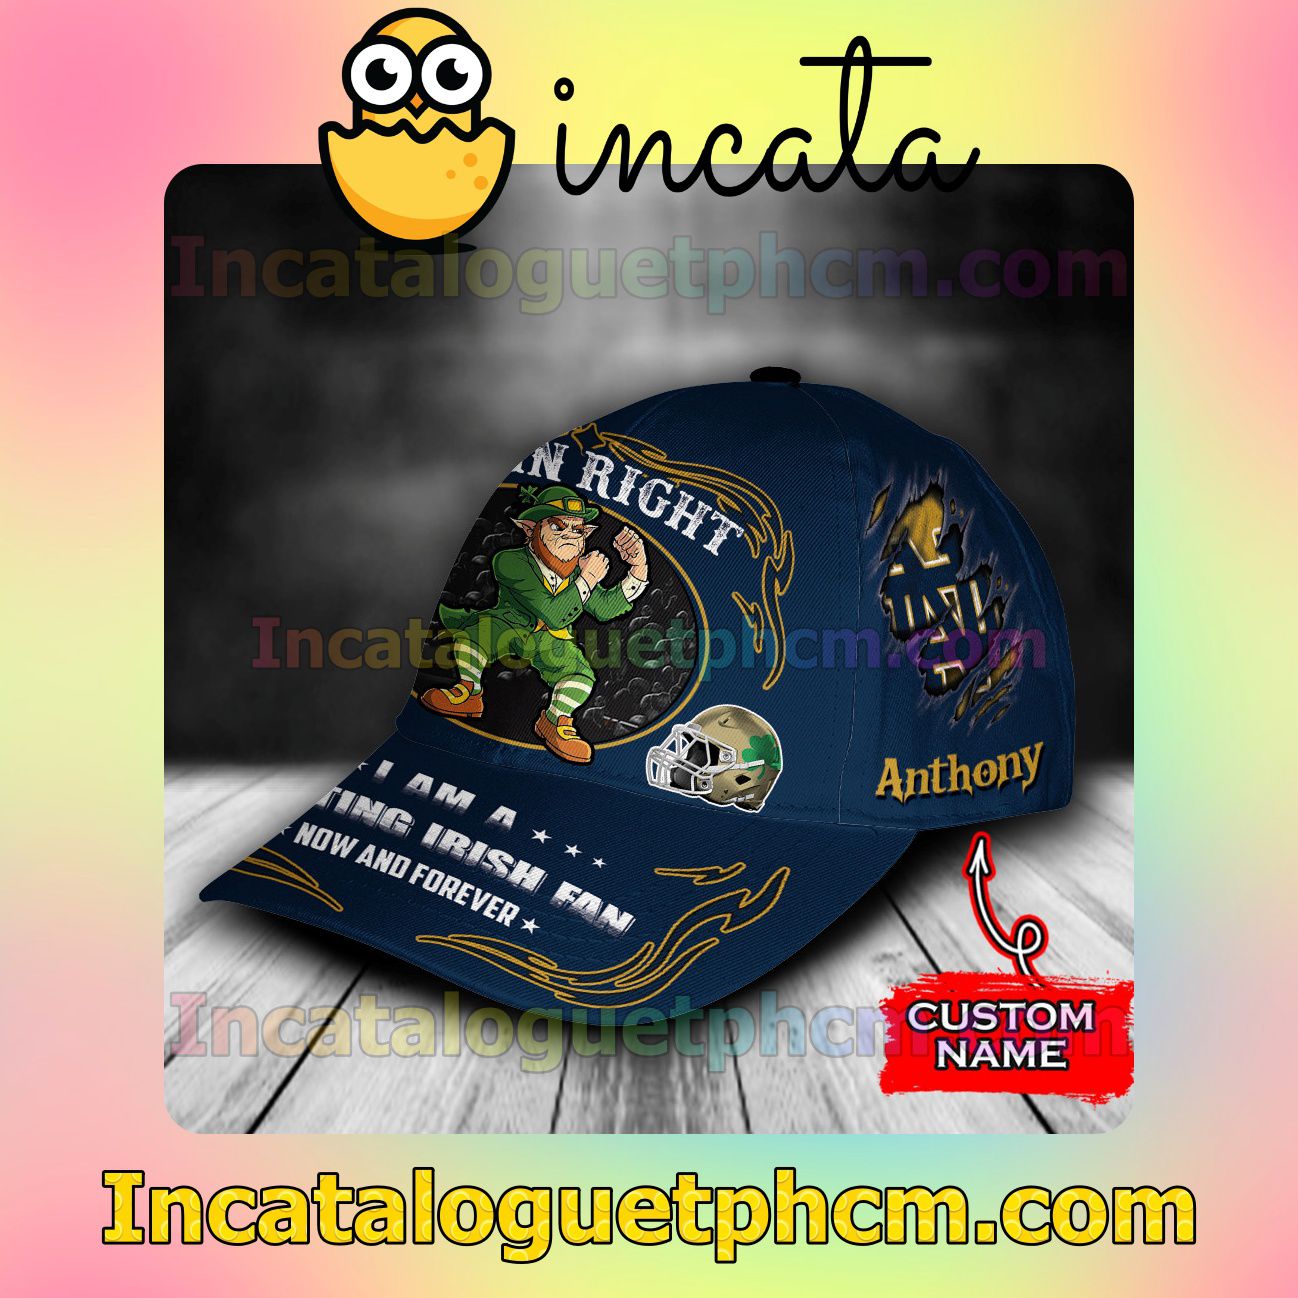 Best Gift Notre Dame Fighting Irish Mascot NCAA Customized Hat Caps